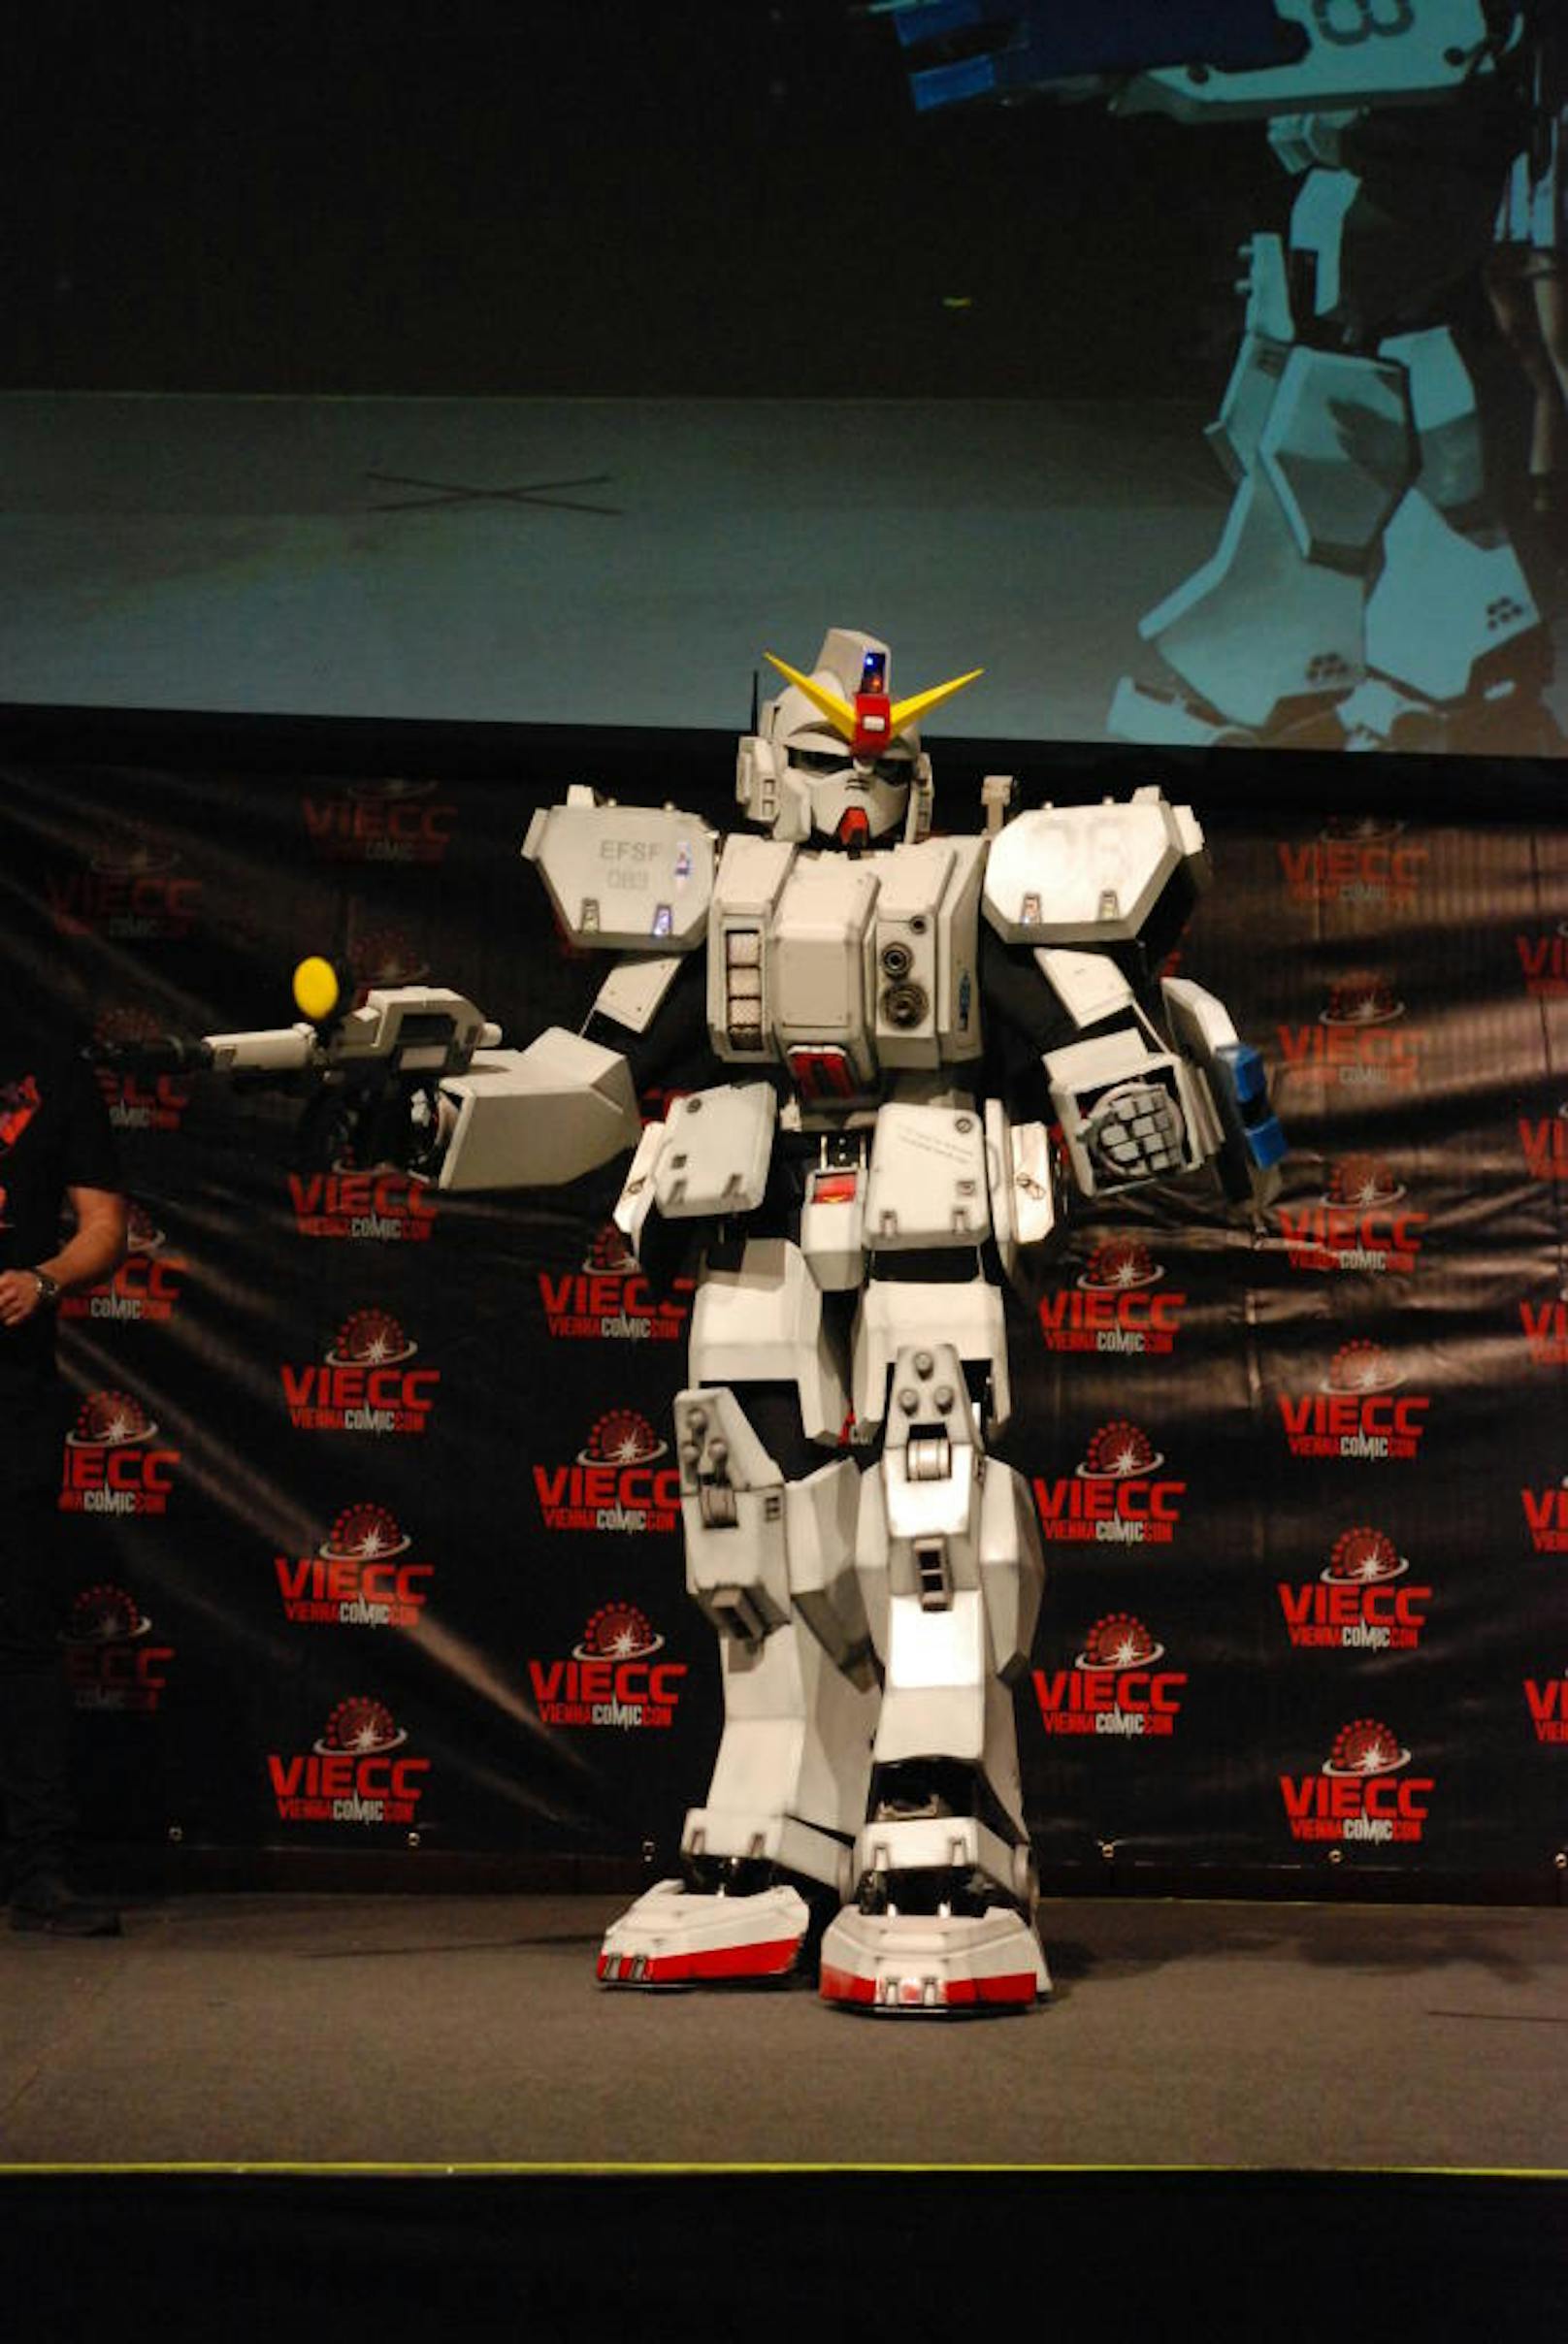 Beim Namen zeigt Gundams Cosplayer nicht viel Kreativität, dafür beim Kostüm umso mehr 

Cosplayer Gundam RX 79
verkleidet als Gundam von Gundam MS08 Team
Kategorie Armor